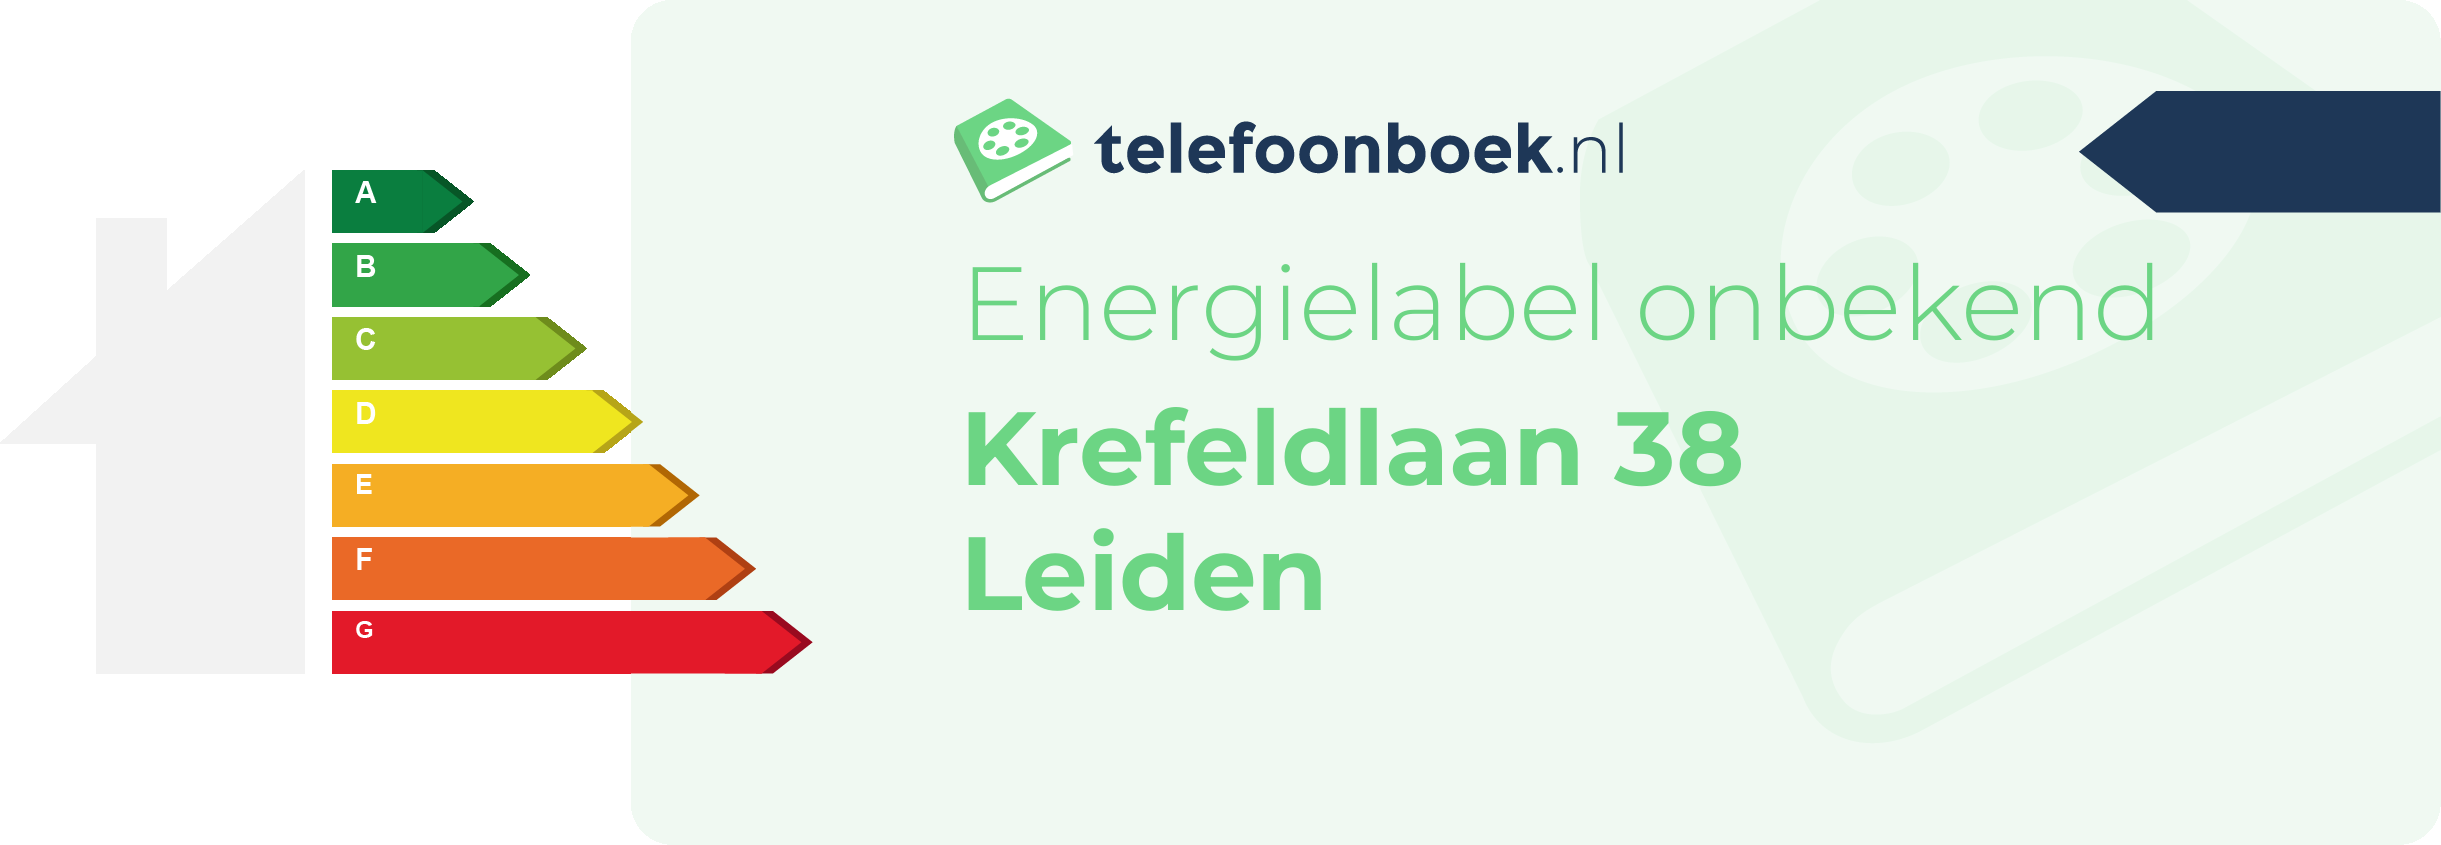 Energielabel Krefeldlaan 38 Leiden